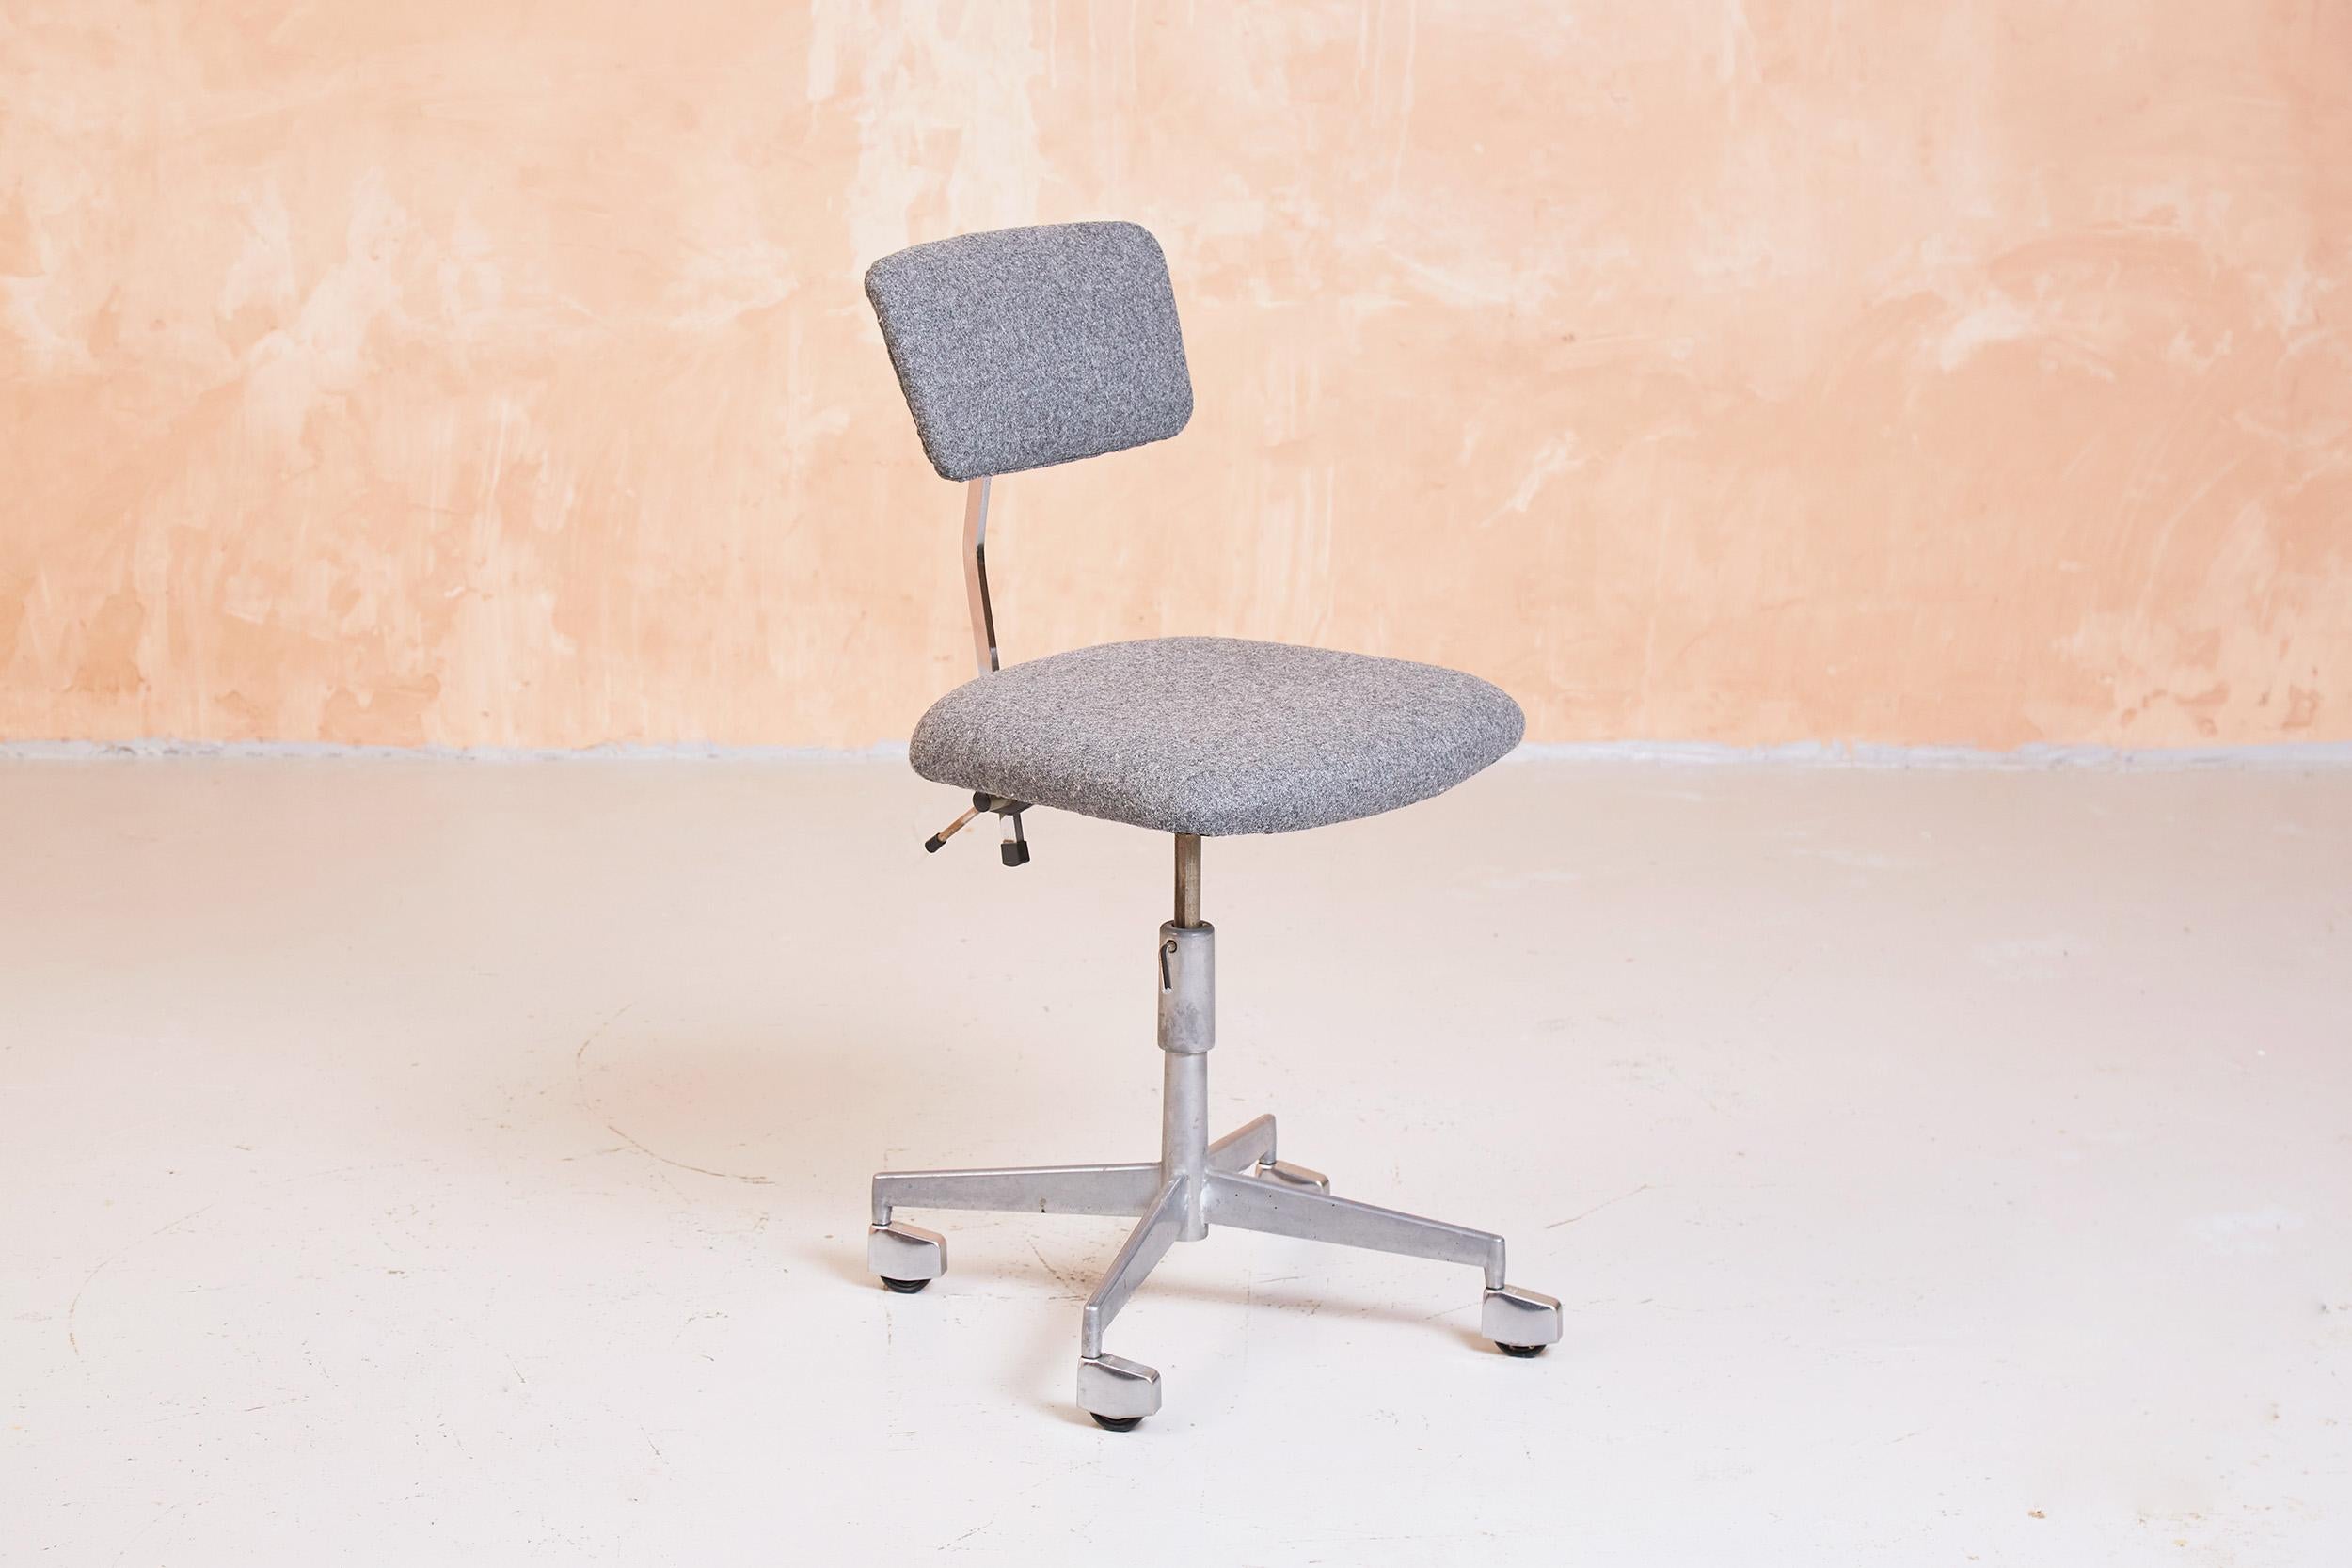 Originales Exemplar des kultigen KEVI-Drehstuhls von Jørgen Rasmussen, der Mitte der 1950er Jahre entworfen und von Labofa hergestellt wurde.

Der Stuhl verfügt über eine verstellbare Sitz- und Rückenlehnenhöhe. Der Winkel der Rückenlehne ist